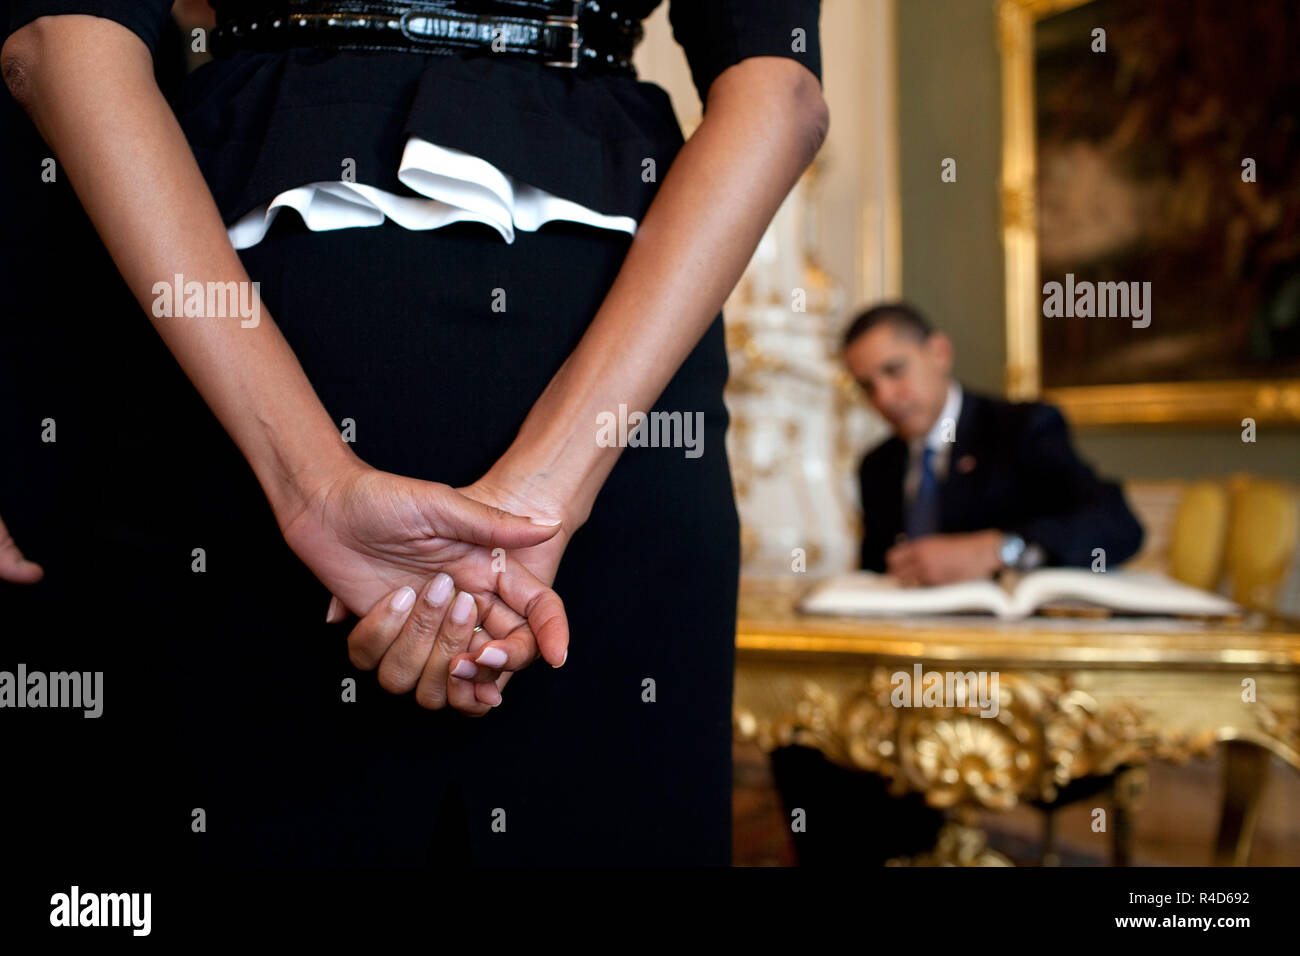 First Lady Michelle Obama wartet, während Präsident Barack Obama, Hintergrund, das Gästebuch bei ihrer Ankunft auf die Prager Burg, 5. April 2009, in der Tschechischen Republik unterzeichnet. Weiße Haus Foto/Pete Souza Stockfoto